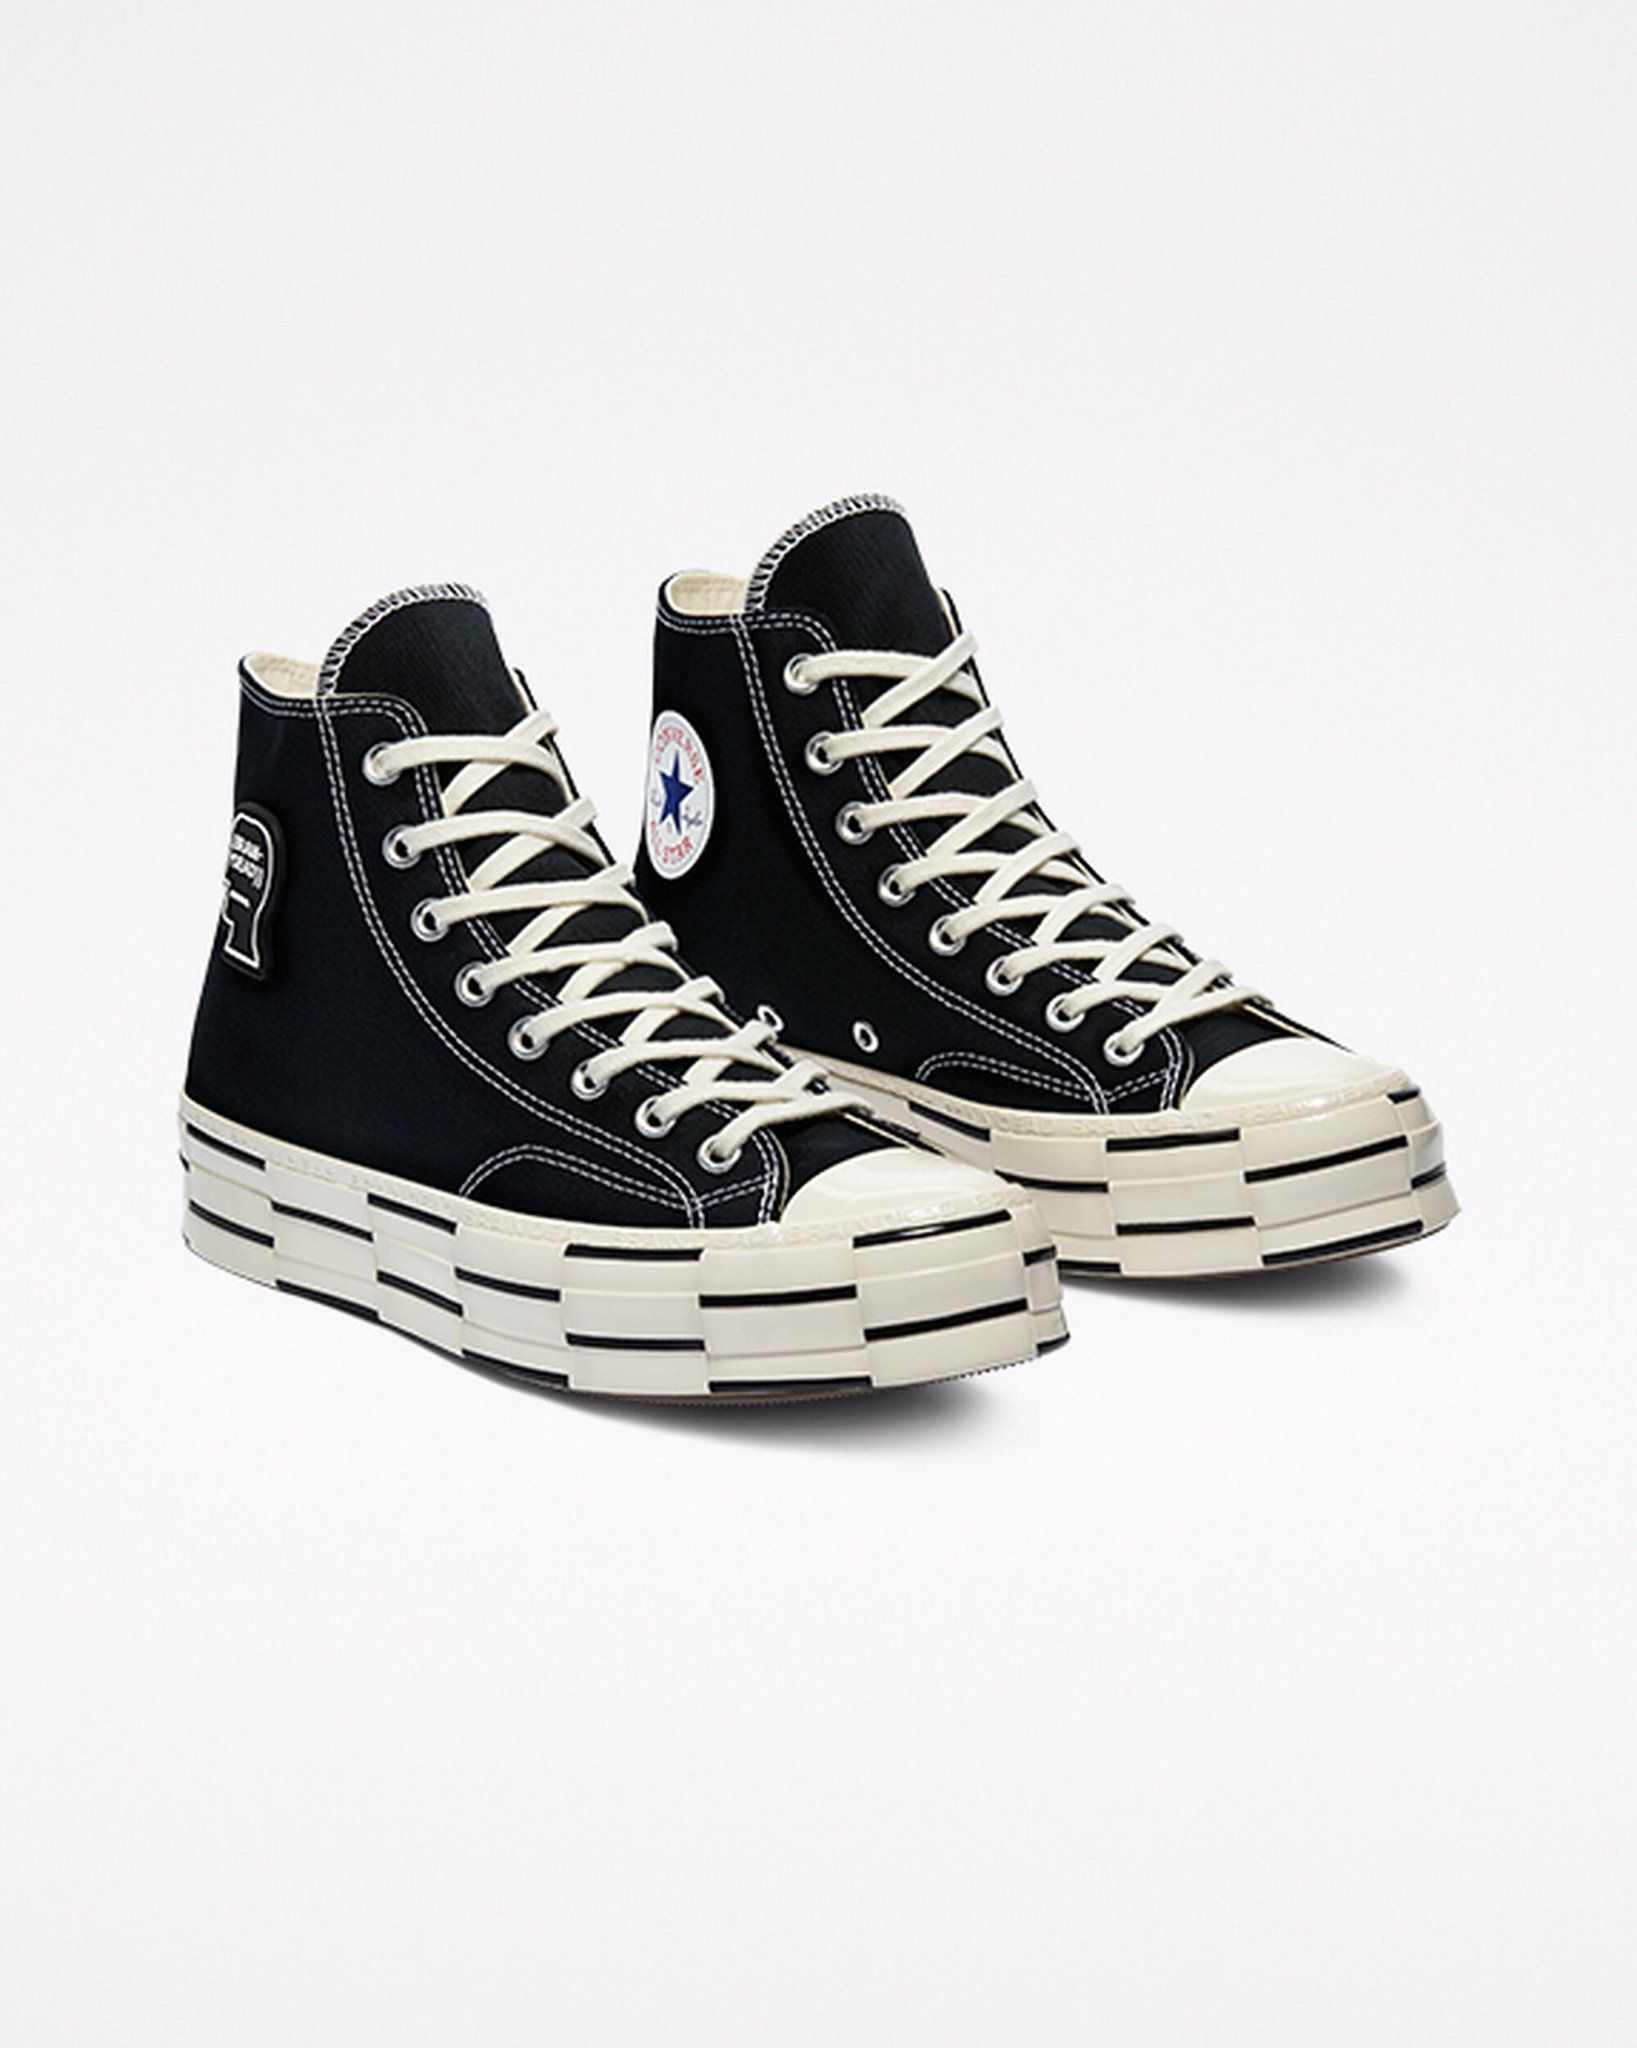 Sepatu Converse yang dipakai Kai EXO